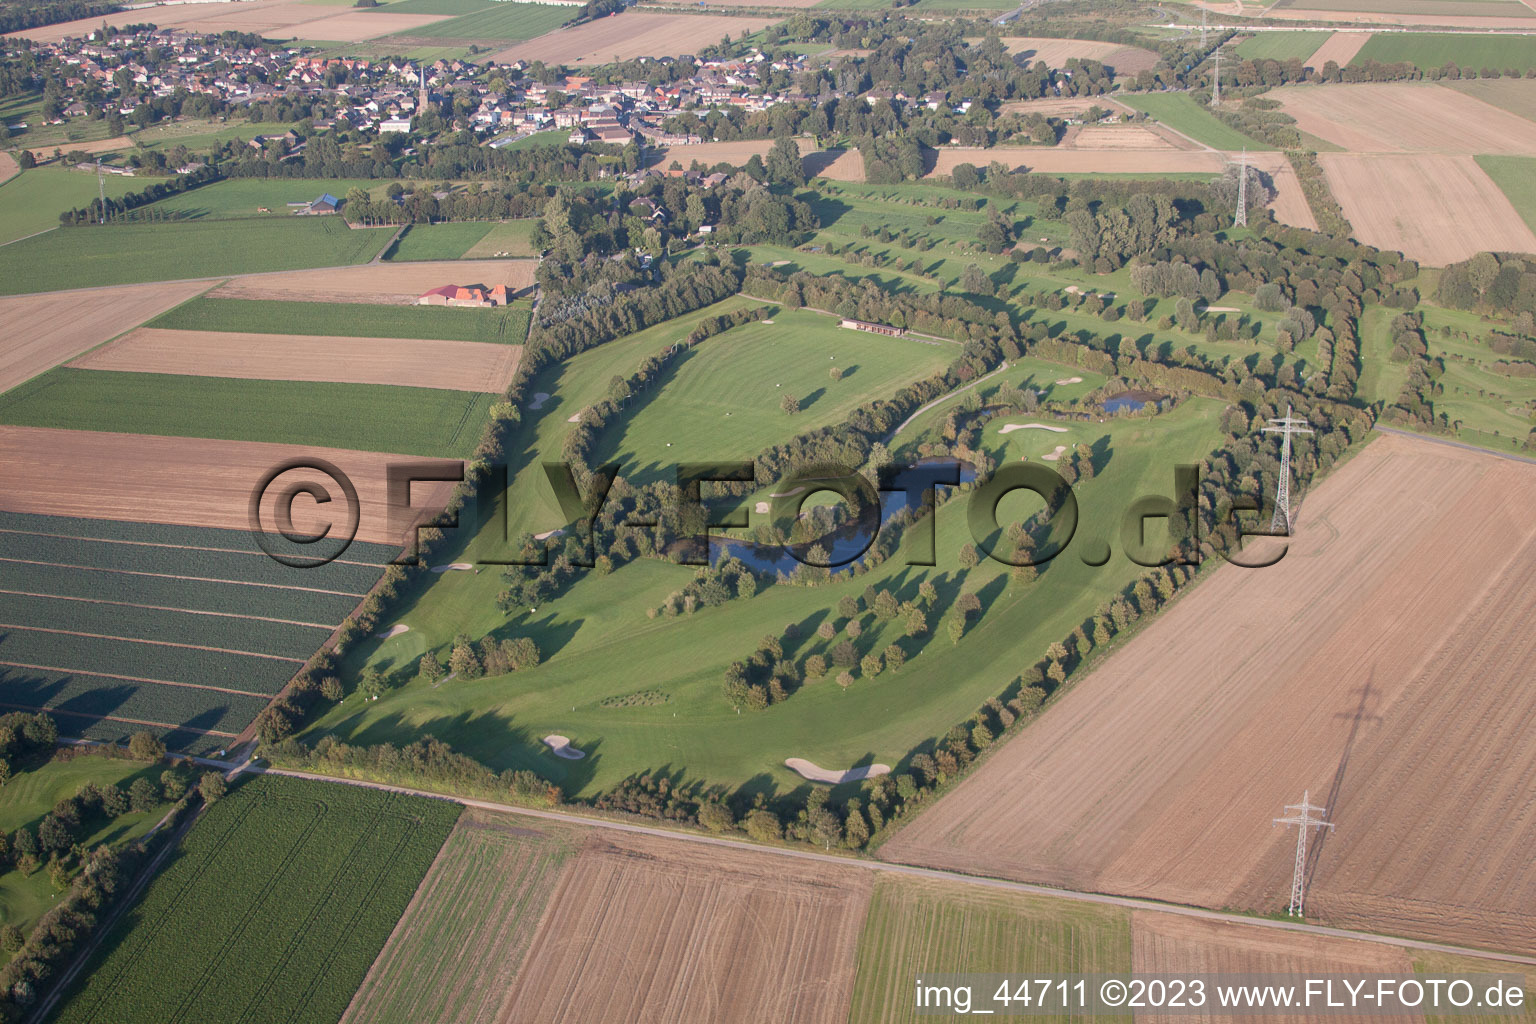 Oblique view of Golf club Mönchengladbach-Wanlo eV in Mönchengladbach in the state North Rhine-Westphalia, Germany